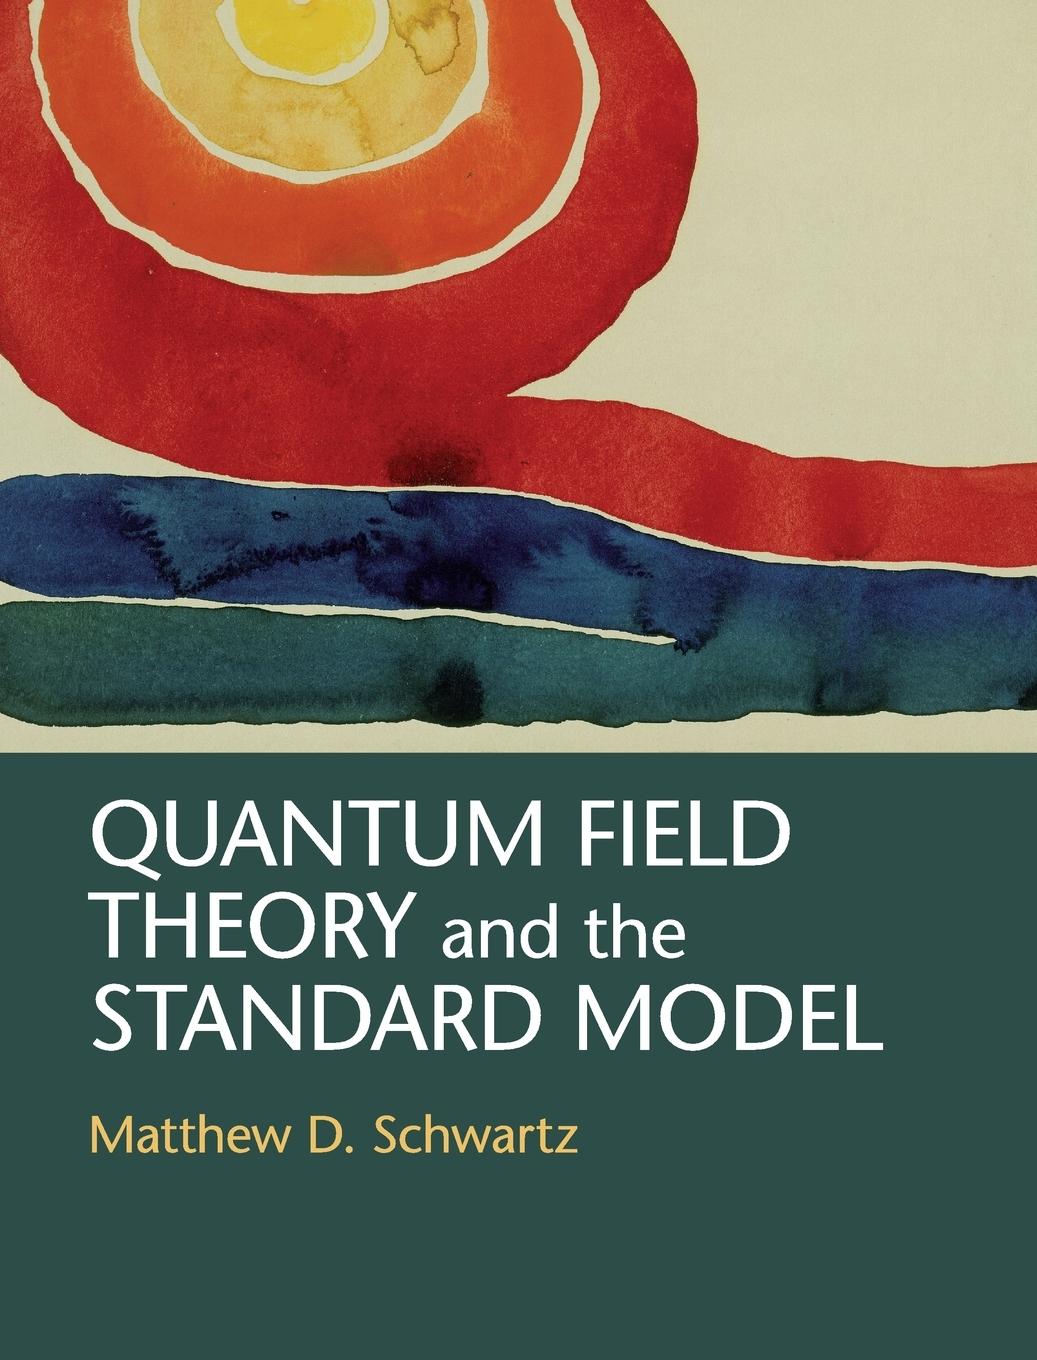 Quantum Field Theory and the Standard Model / Matthew D. Schwartz / Buch / HC gerader Rücken kaschiert / Gebunden / Englisch / 2019 / Cambridge University Press / EAN 9781107034730 - Schwartz, Matthew D.